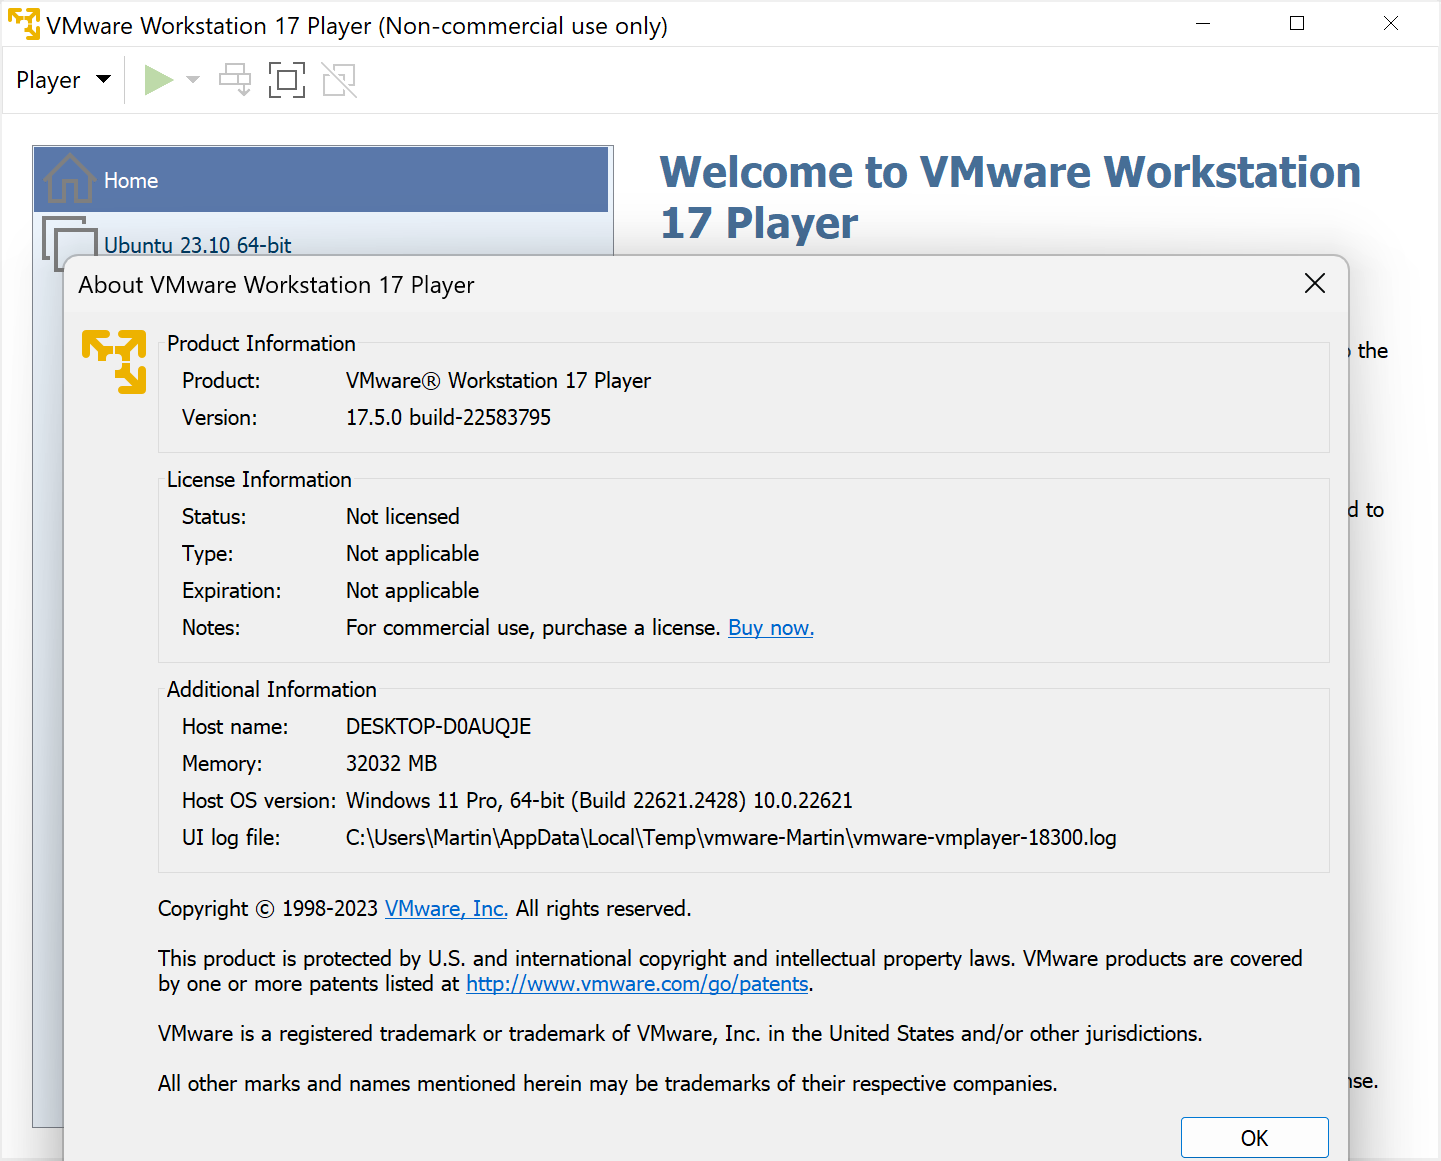 vmware-workstation-player-17.5